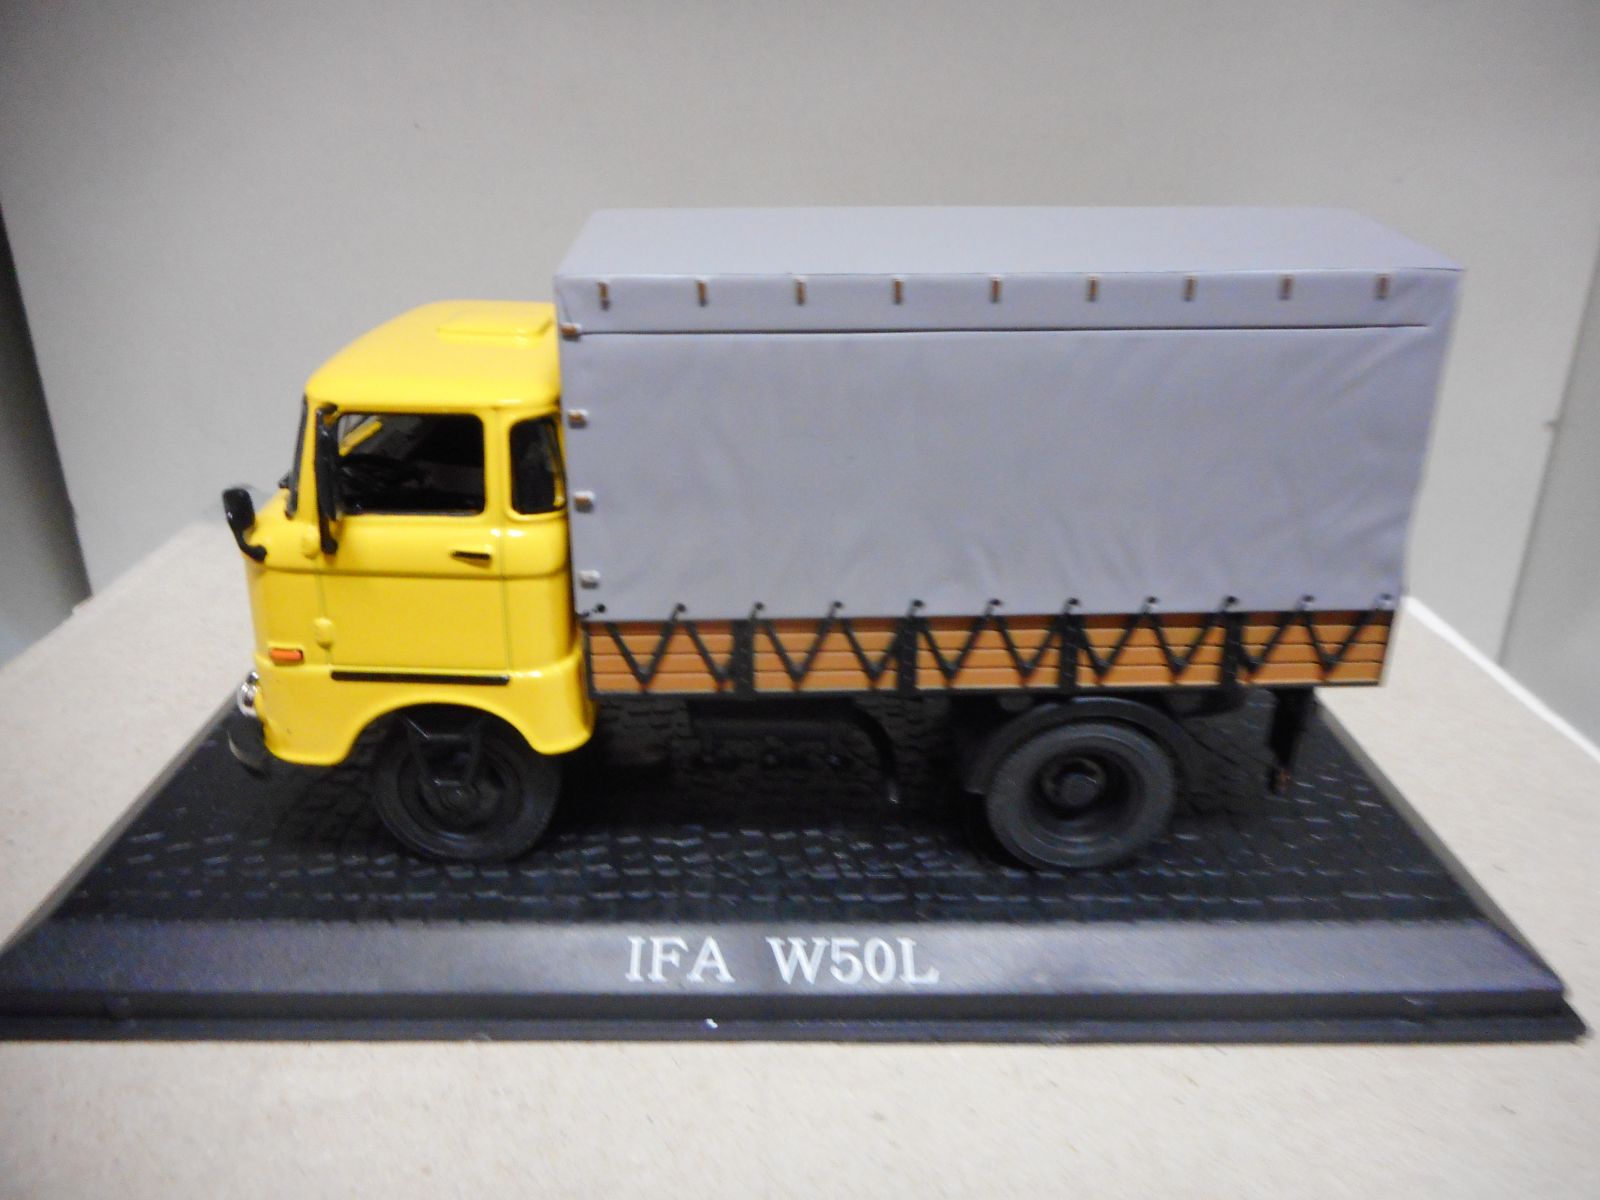 IFA W50L TRUCK ATLAS IXO 1:43 - BCN STOCK CARS